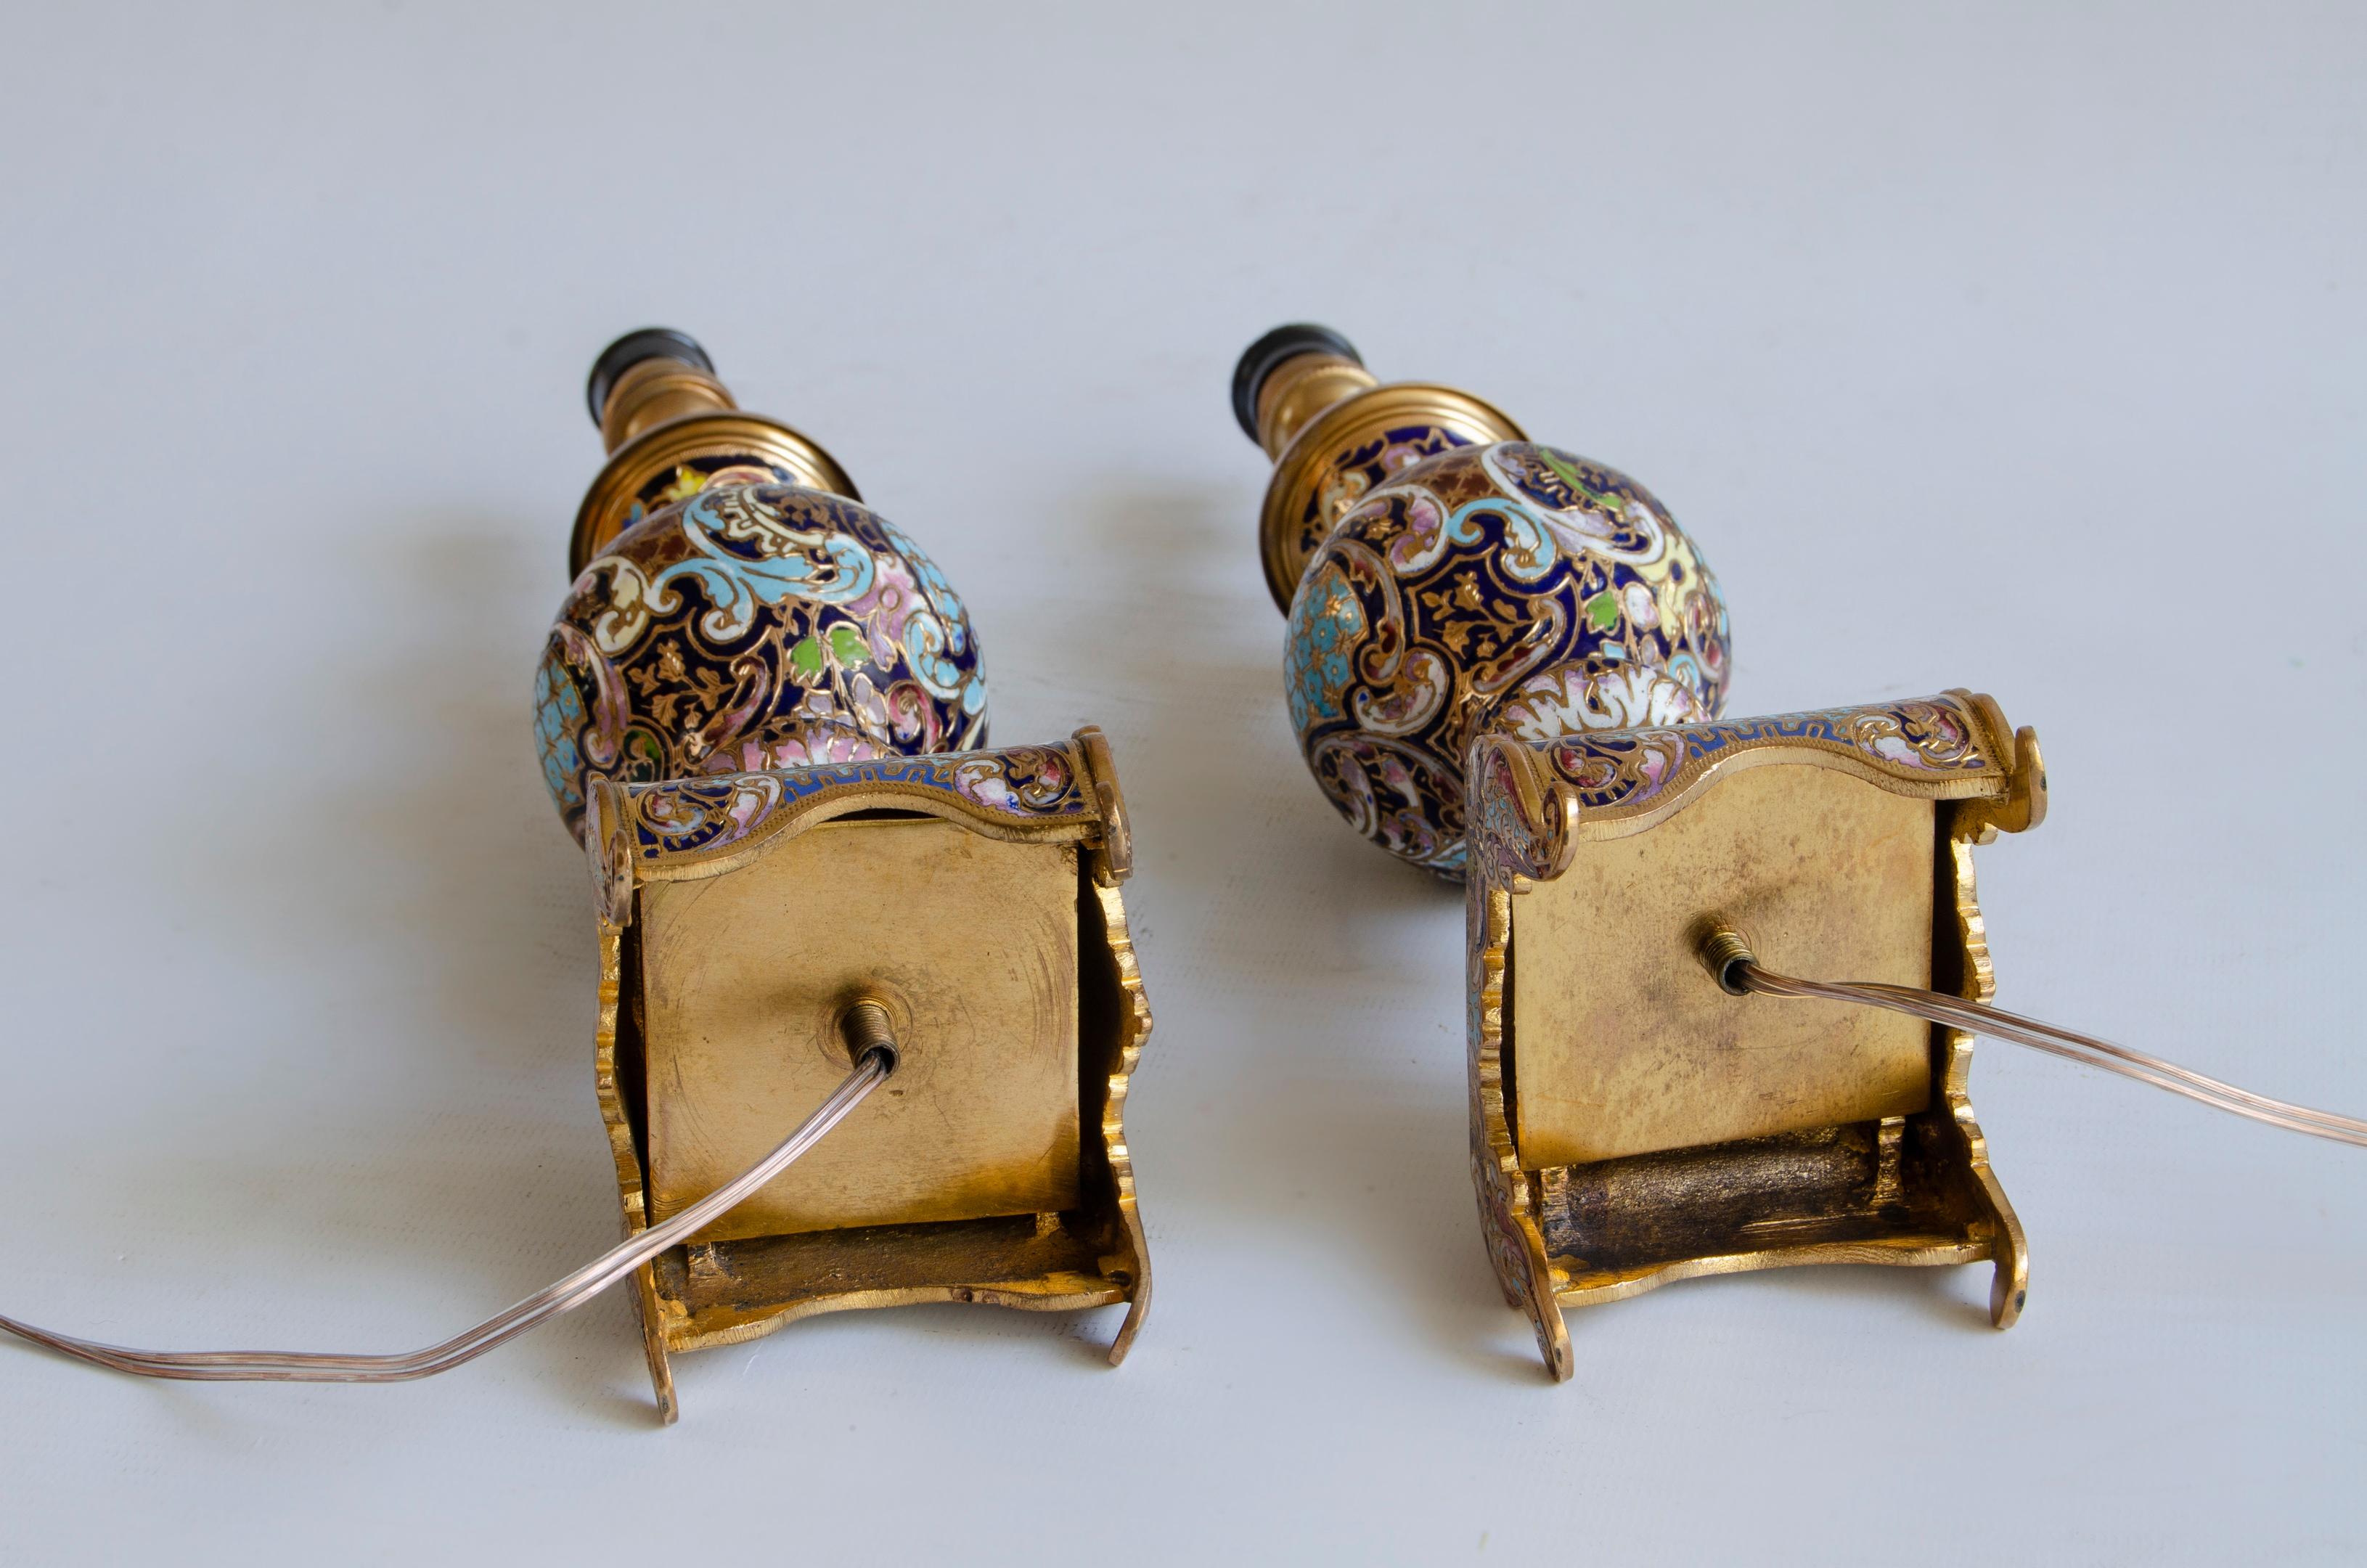 Une paire de lampes champlevées Napoléon III
Lampes de chevet en émail champlevé et ronce
électrifié 220 w
xIXe siècle, vers 1870
origine France.
Le style Napoléon III a connu son apogée dans les années 1850 et 1880. L'empereur Napoléon voulait